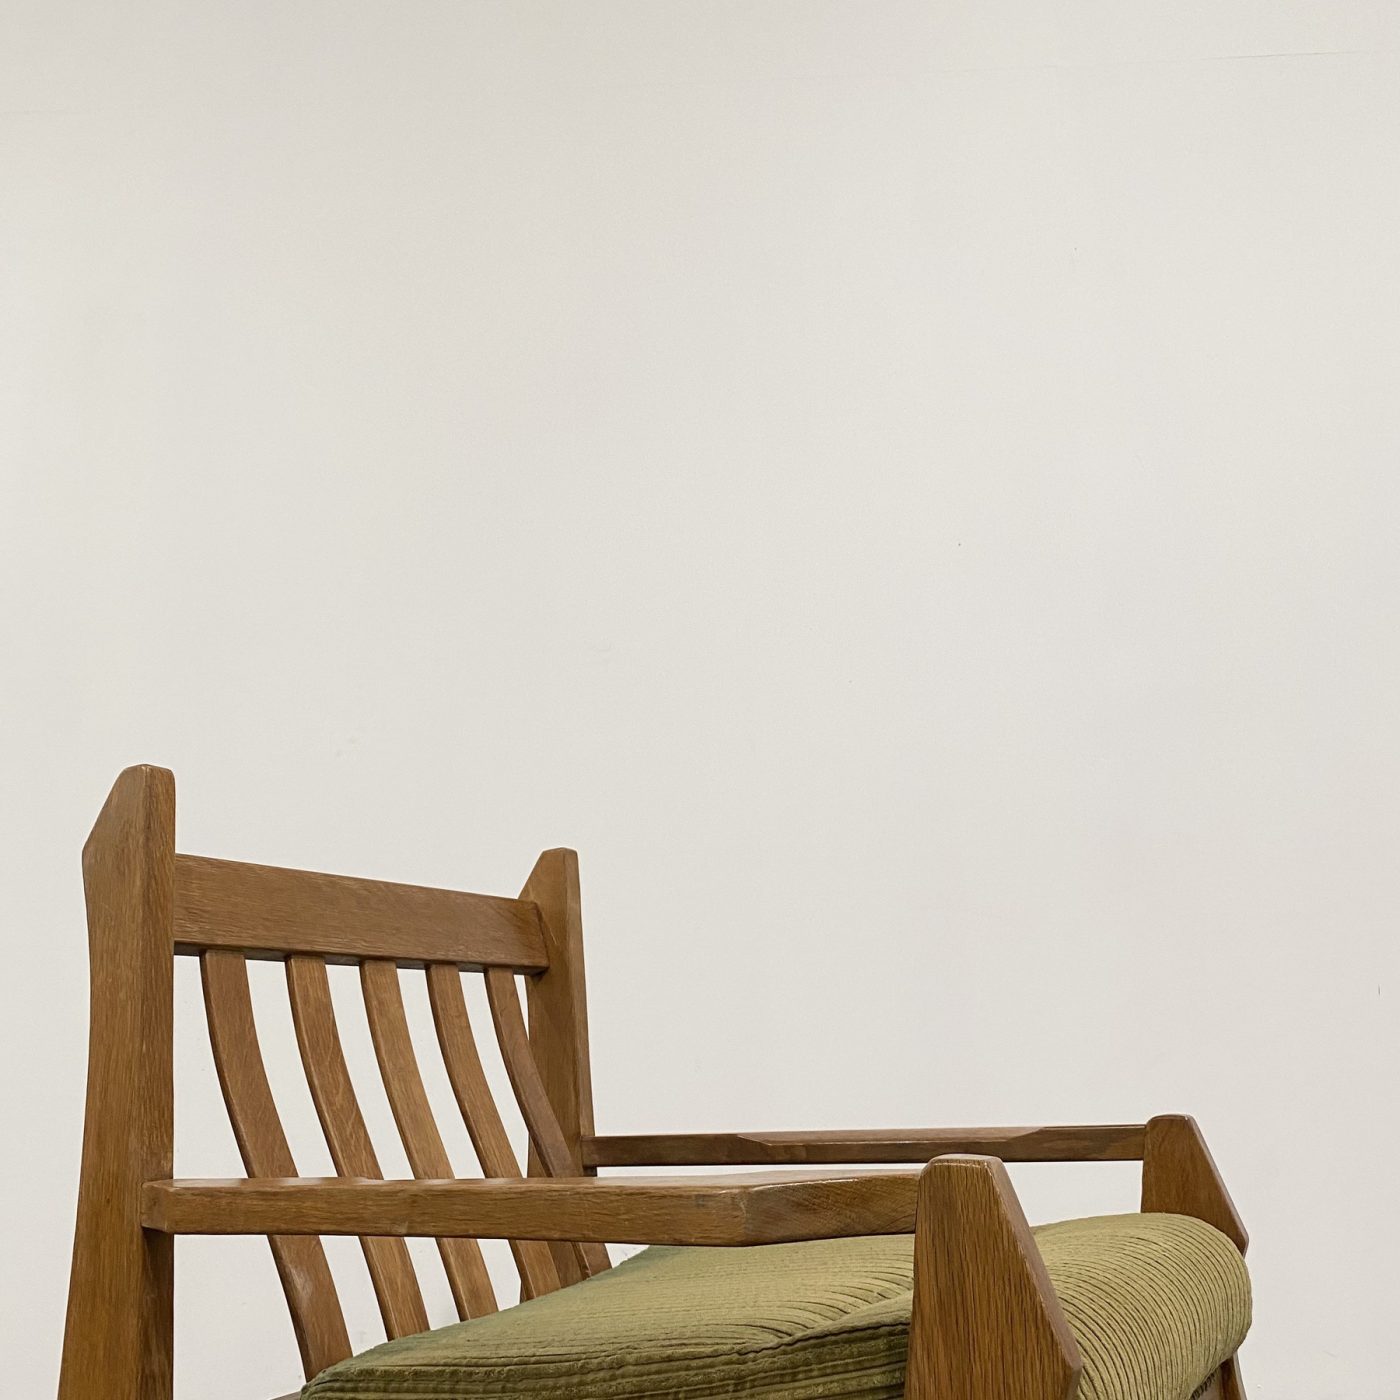 objet-vagabond-oak-armchairs0005